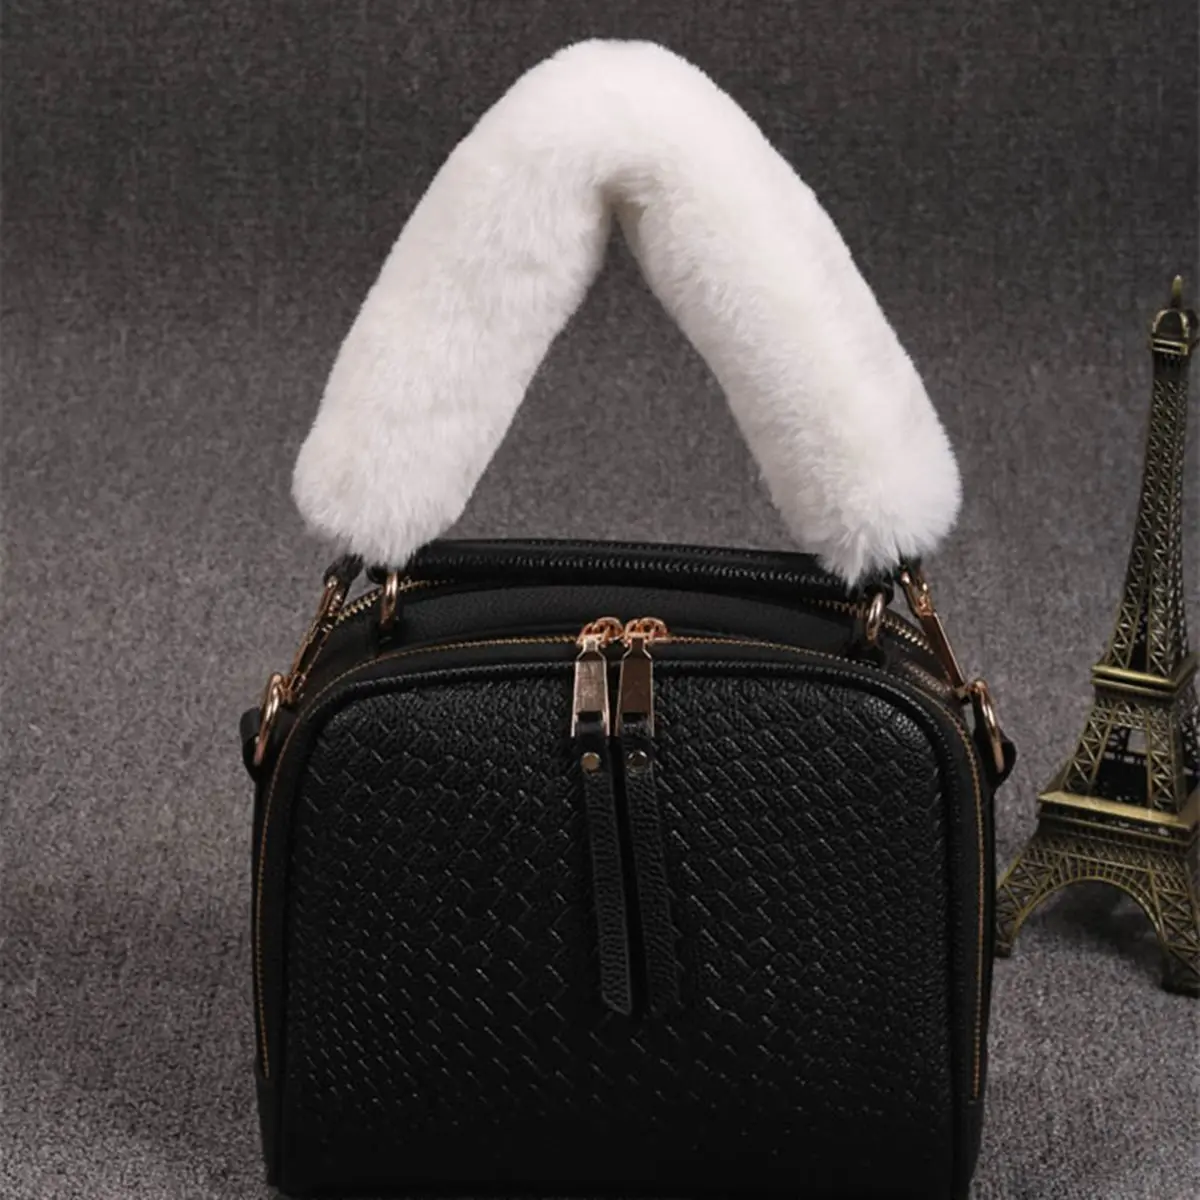 Aequeen 120/100/40 см DIY Замена сумка ремень для сумки женская сумка из меха ремни ручка для кошелек Ремни сумок, аксессуары для сумок из золотистой пряжкой - Цвет: White 40cm